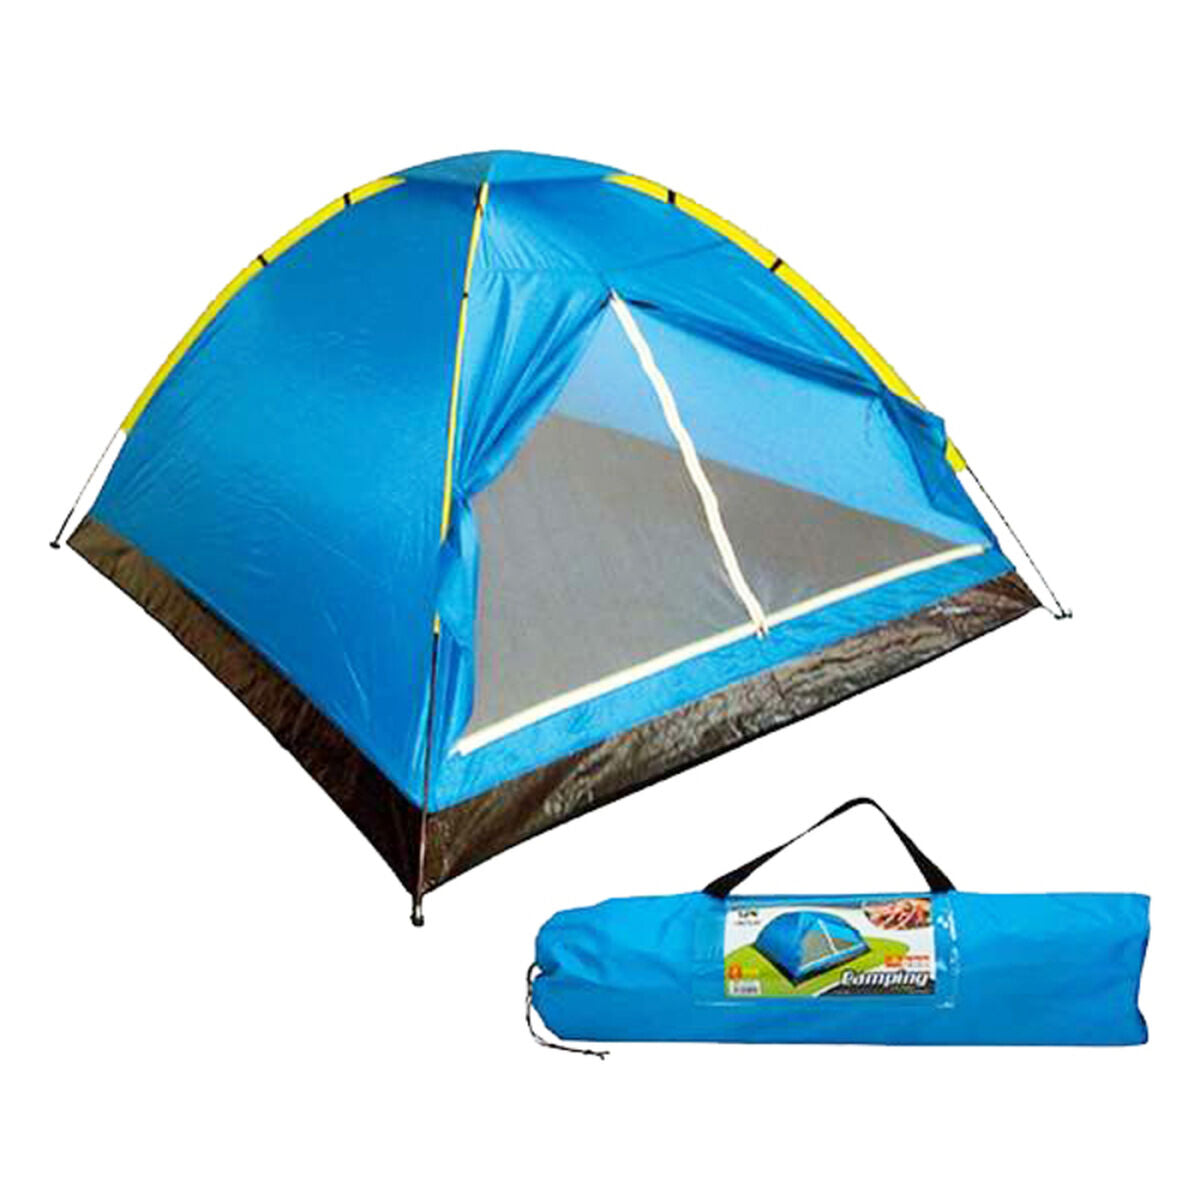 Tenda da Campeggio Dome Aktive